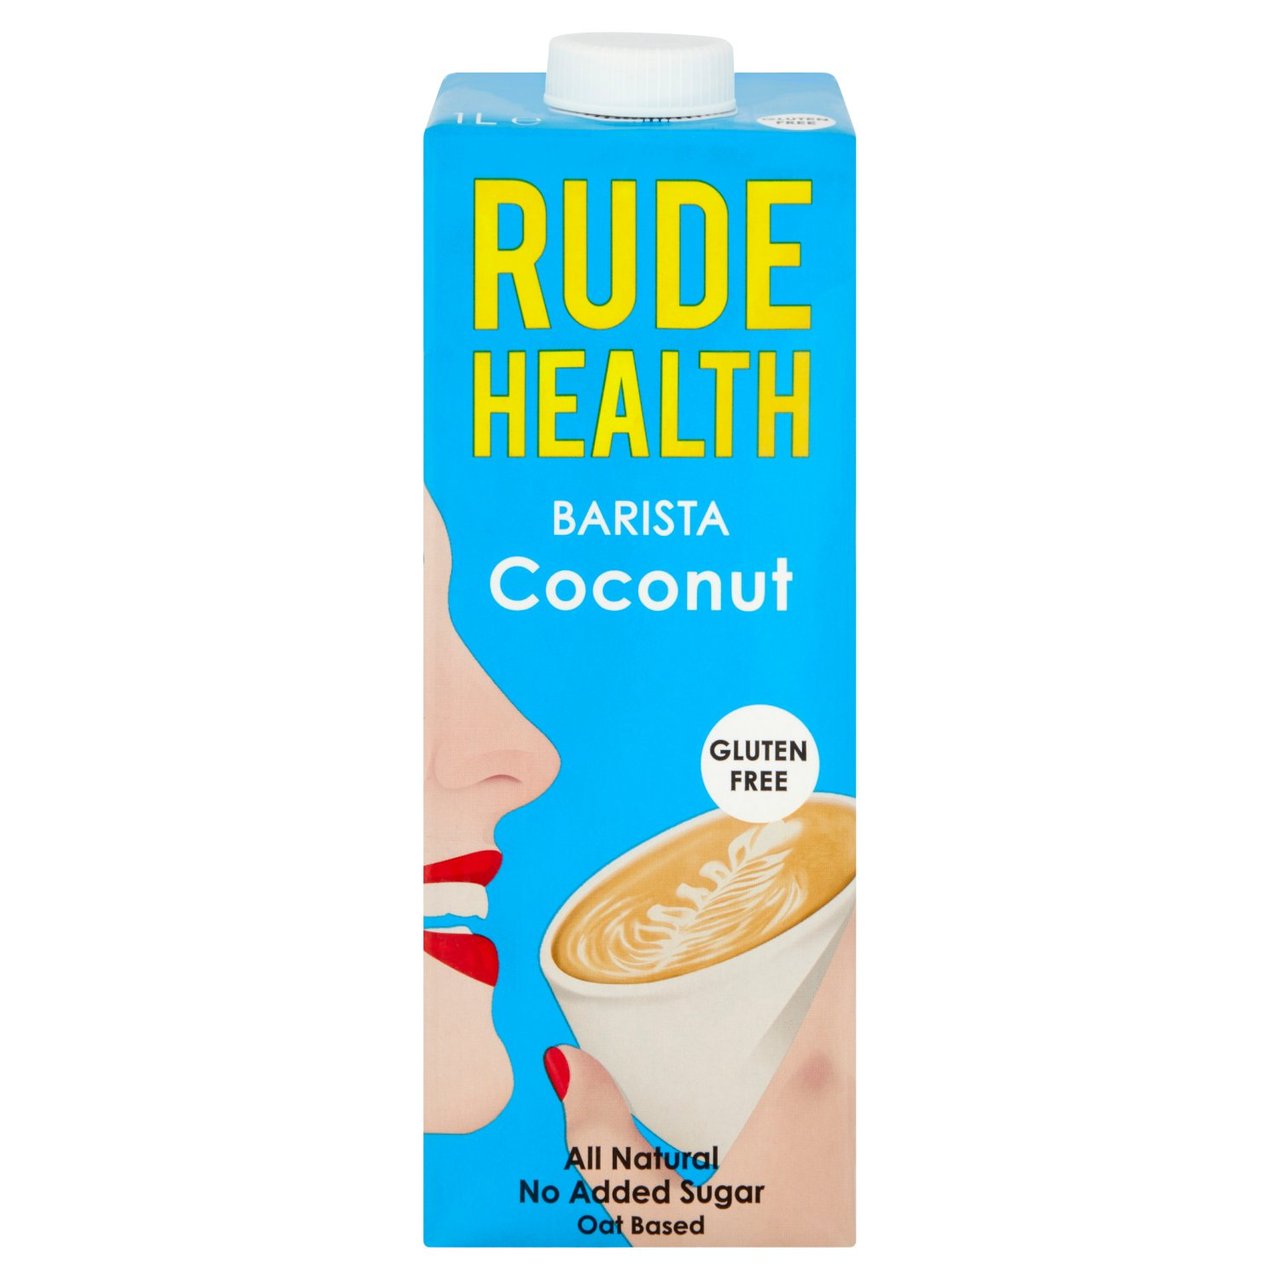 Rude Health BARISTA Coconut drink Non-Organic 1L